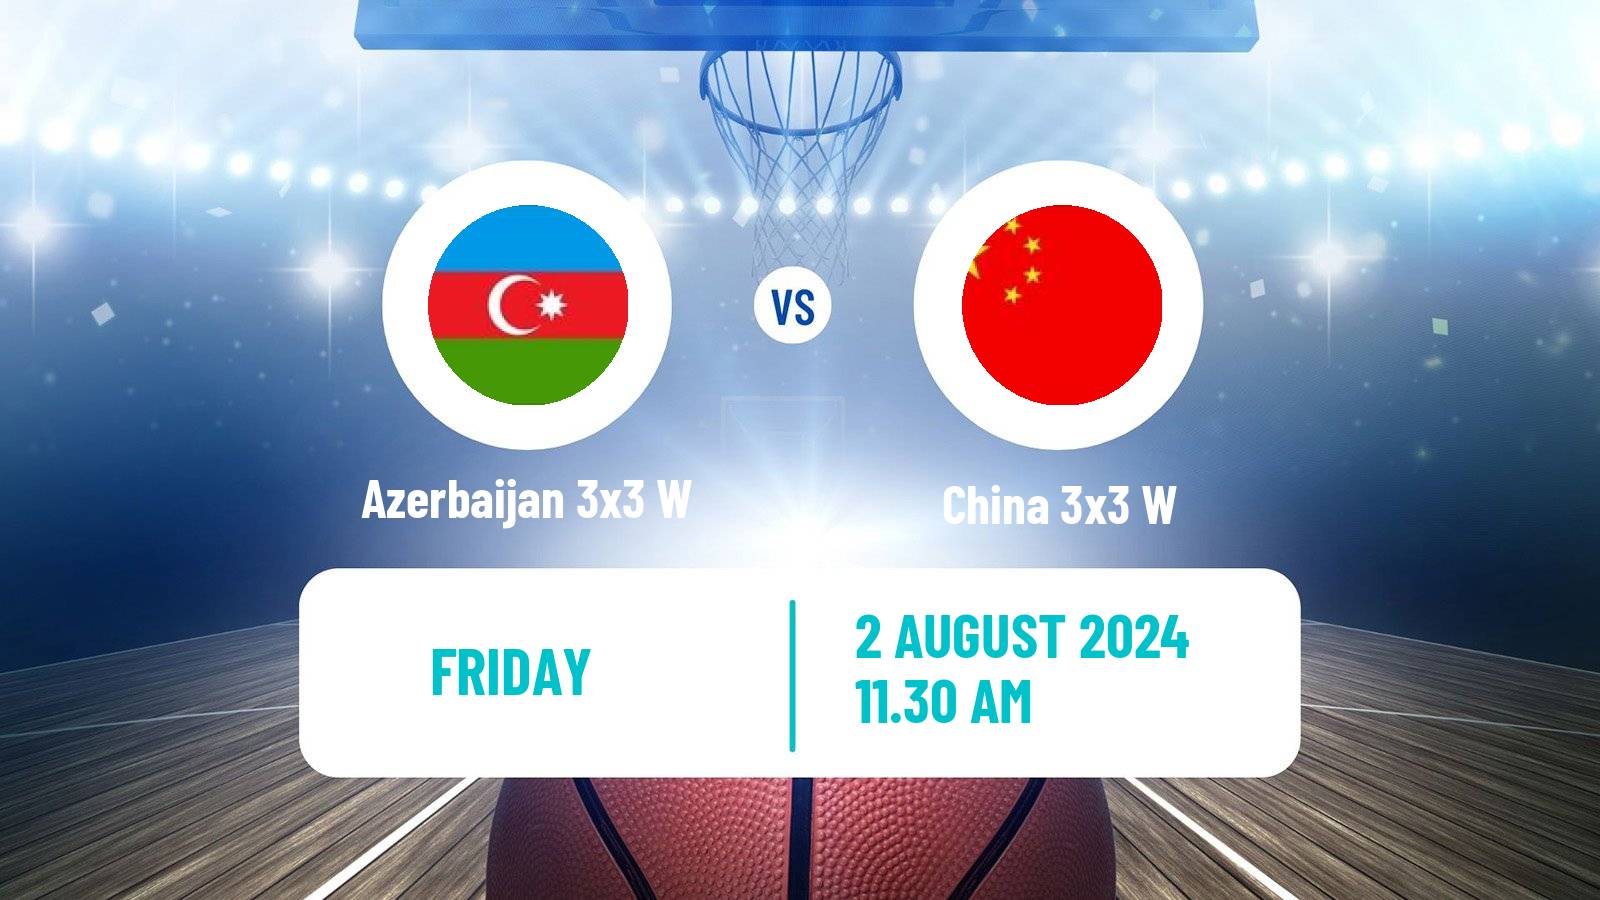 Basketball Olympic Games Basketball 3x3 Women Azerbaijan 3x3 W - China 3x3 W